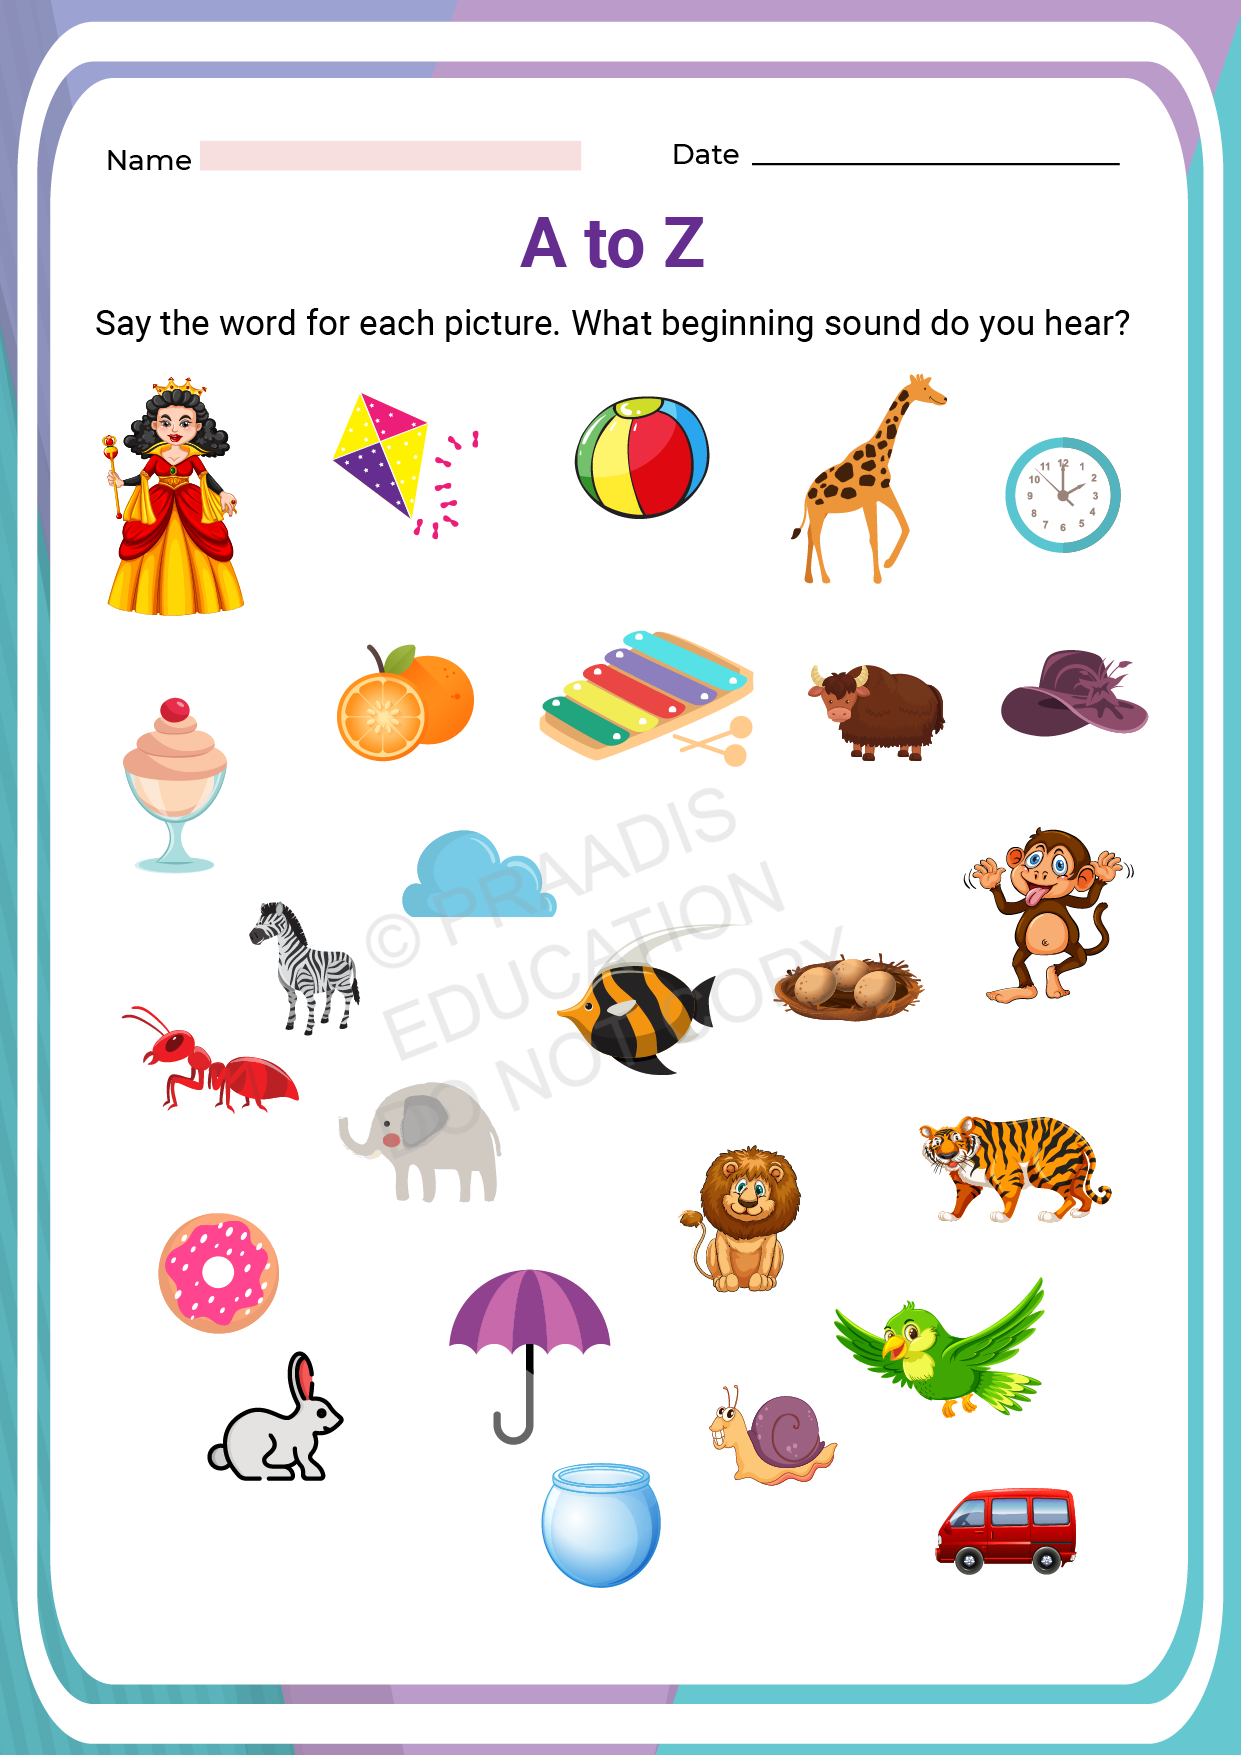 download-lkg-worksheets-set-07-lkg-worksheets-kindergarten-alphabet